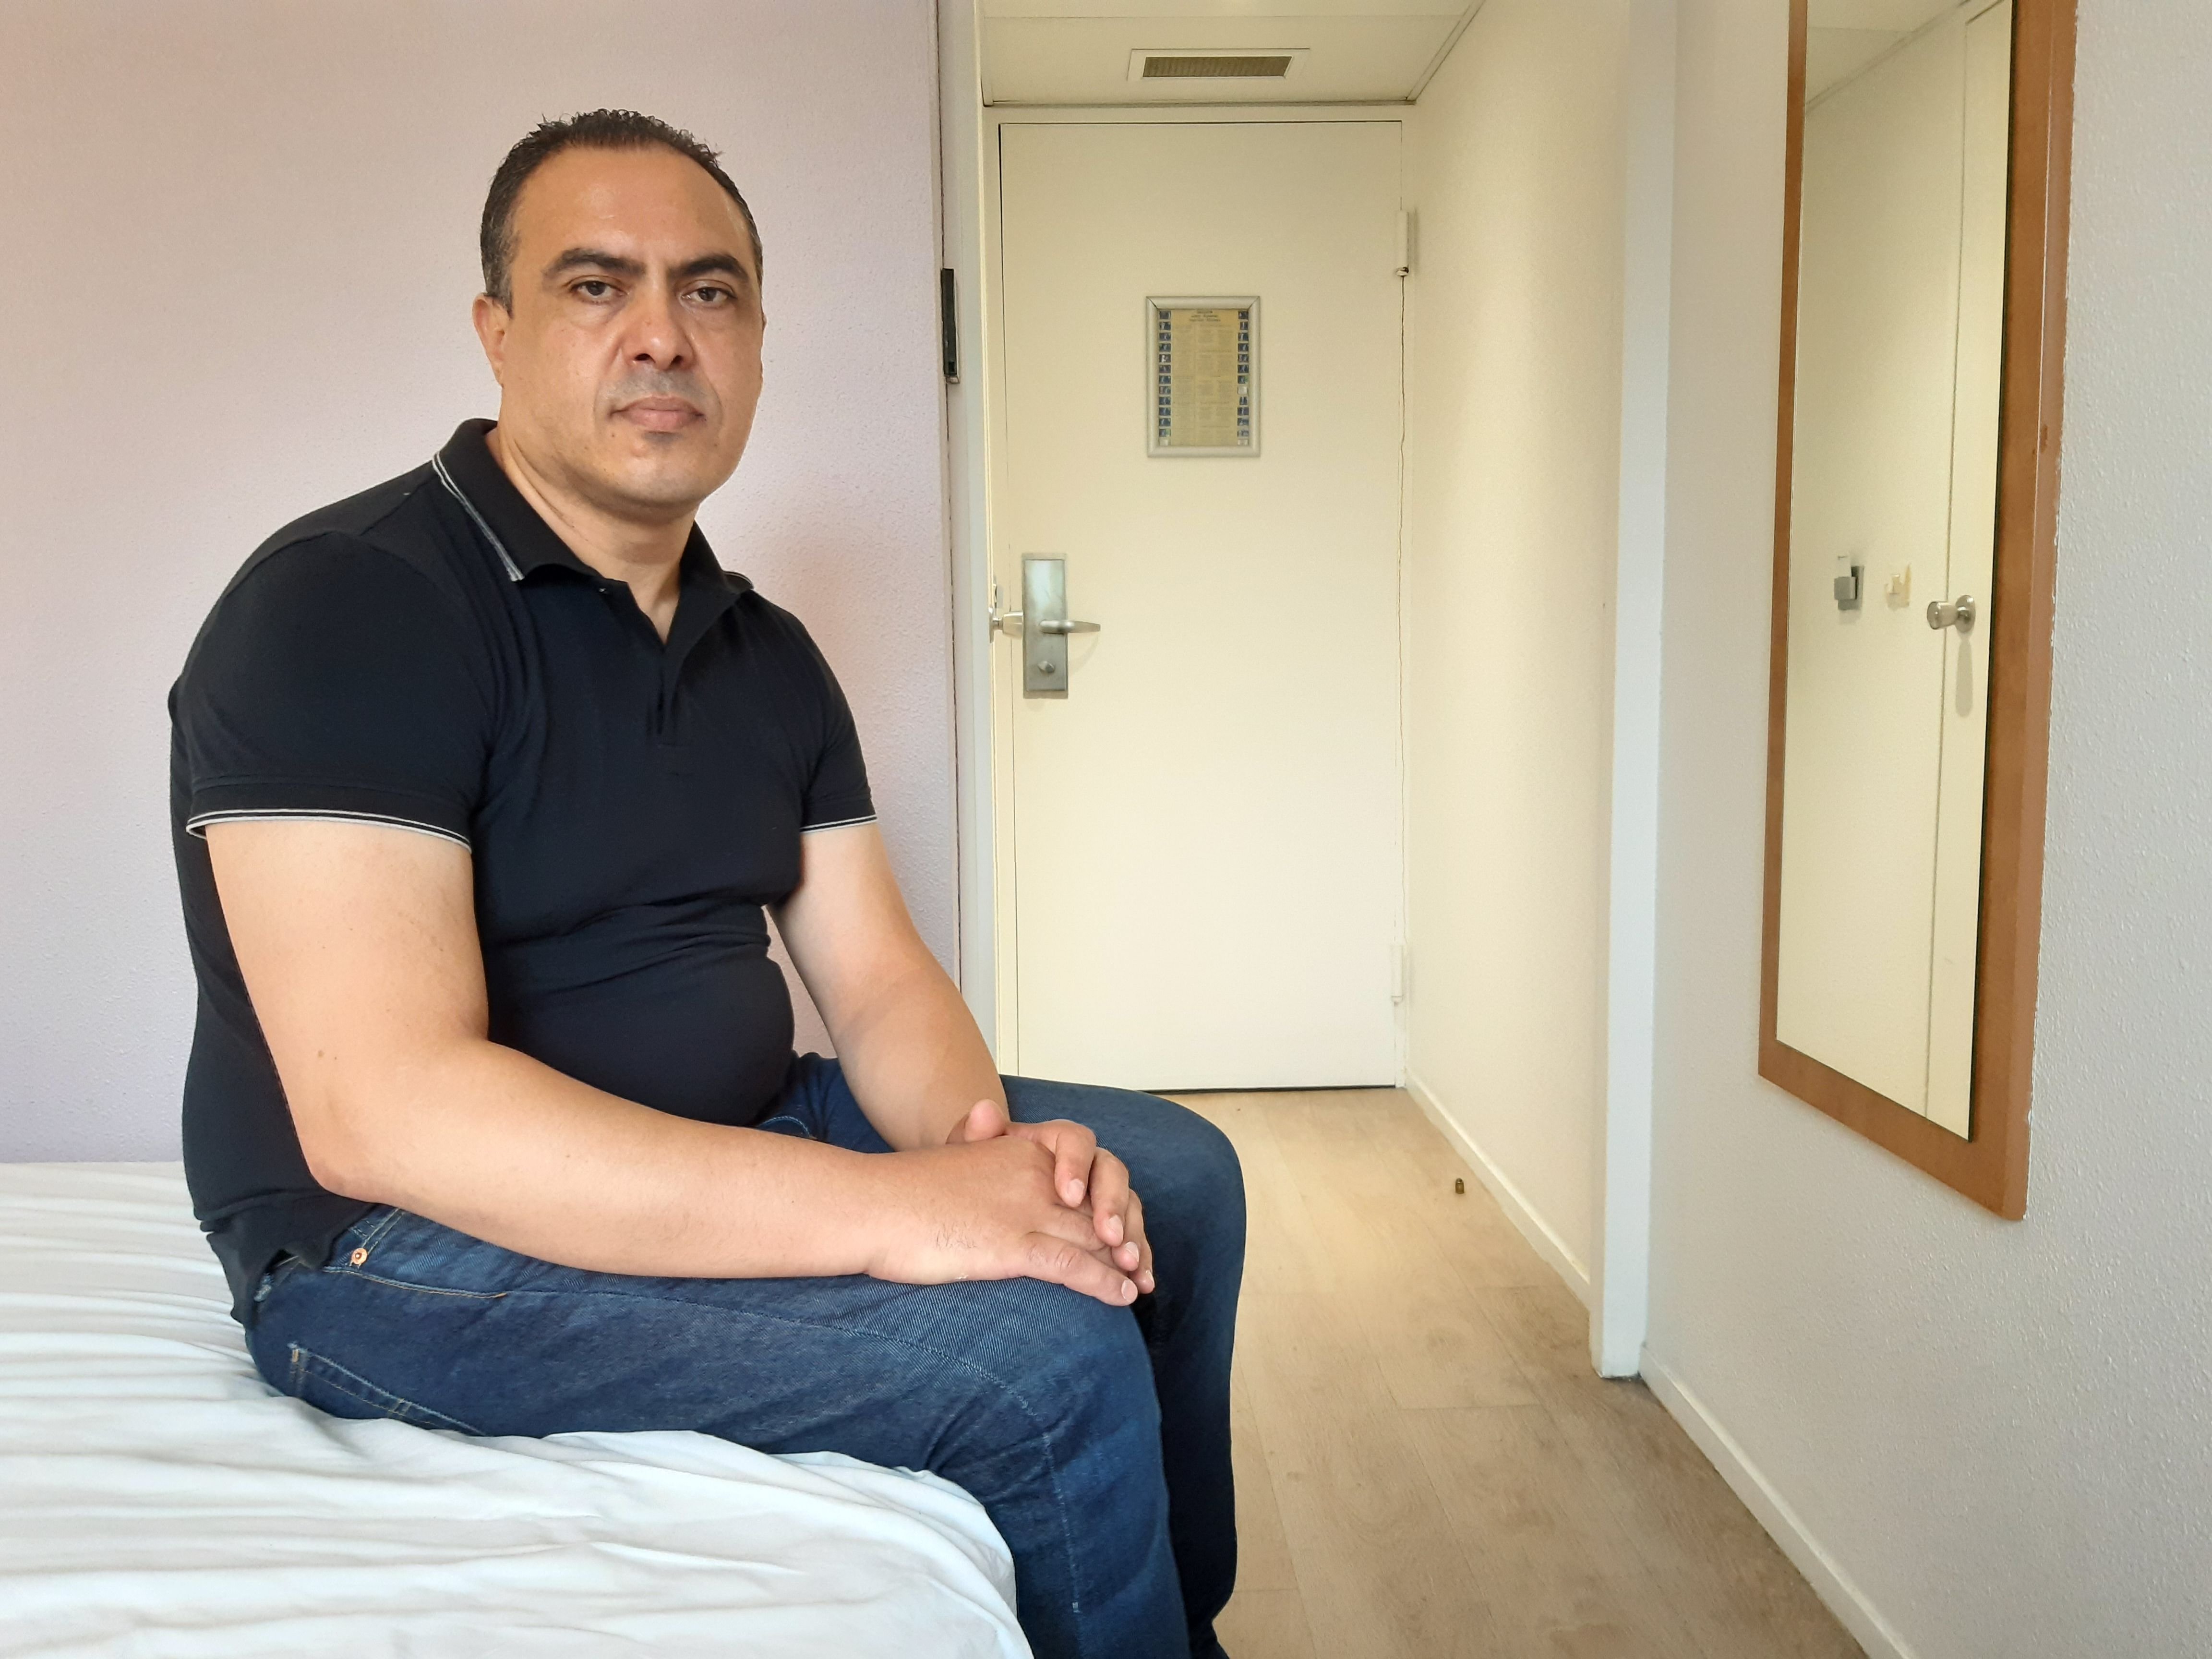 Ayoub s'est réfugié avec son fils à l'hôtel, dans une autre ville de Seine-Saint-Denis. Plus question pour lui de retourner à Pantin. LP/Denis Courtine